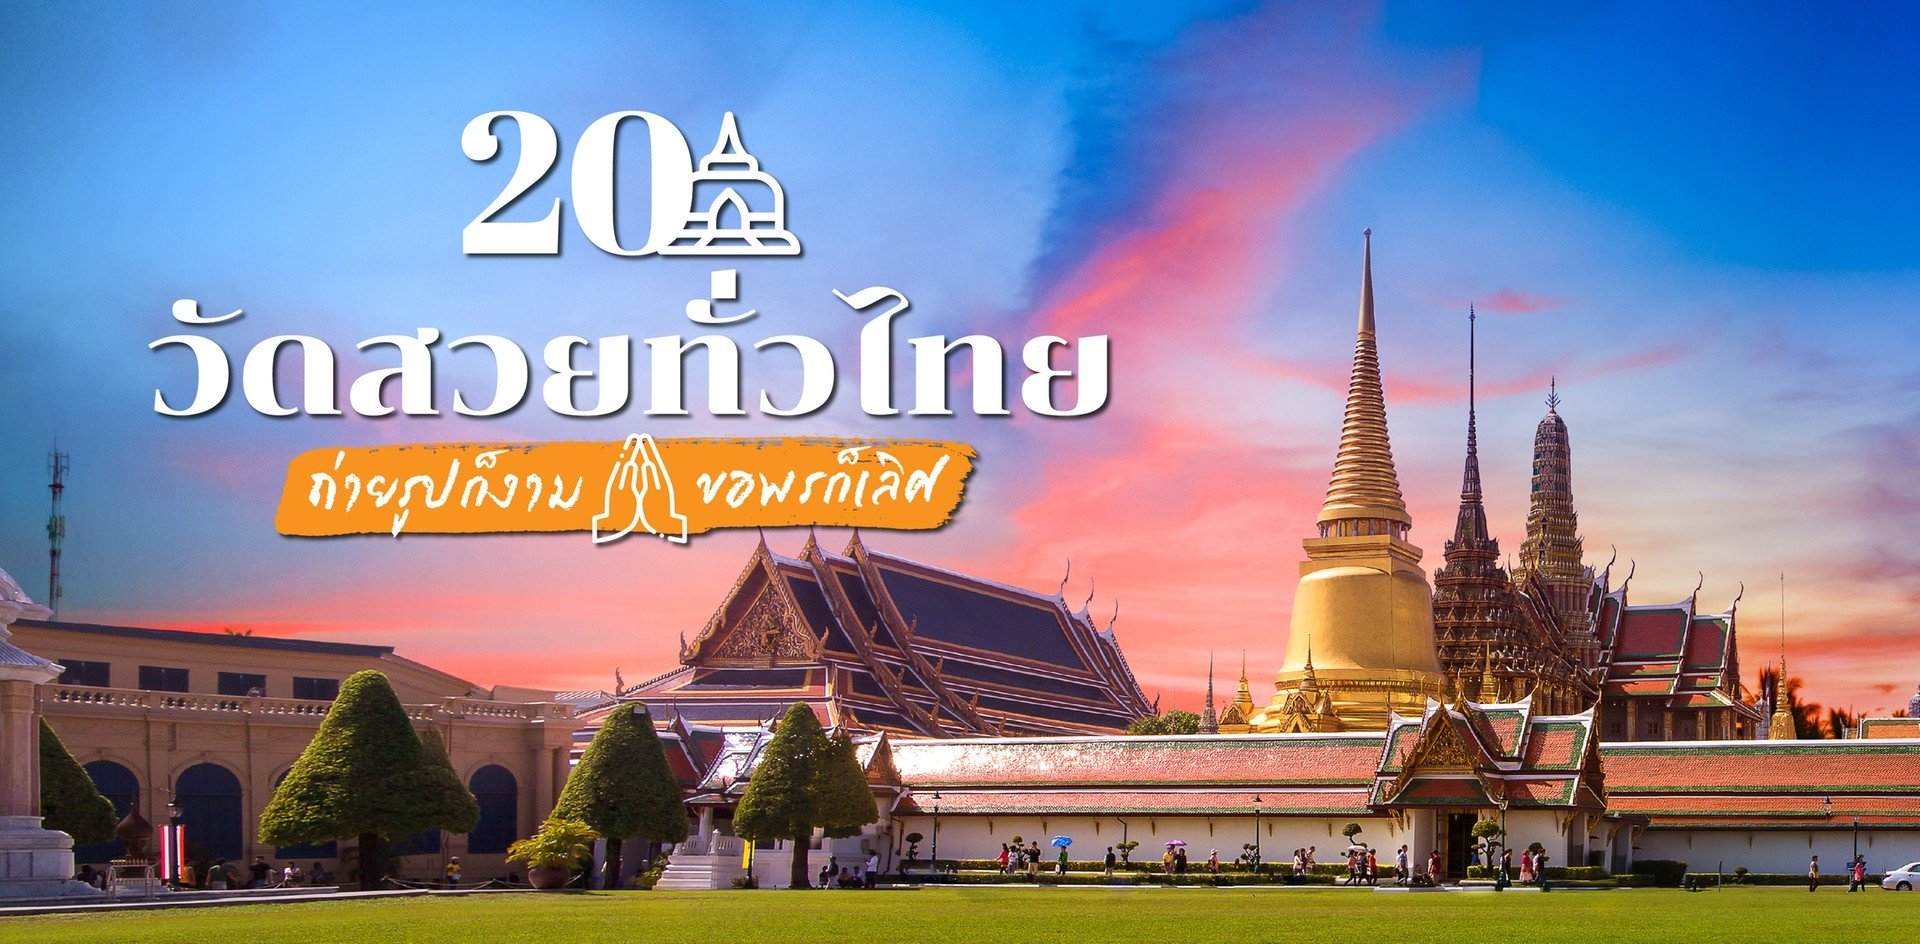 20 ที่เที่ยววัดสวยทั่วไทย ขอพรปัง ถ่ายรูปงาม!